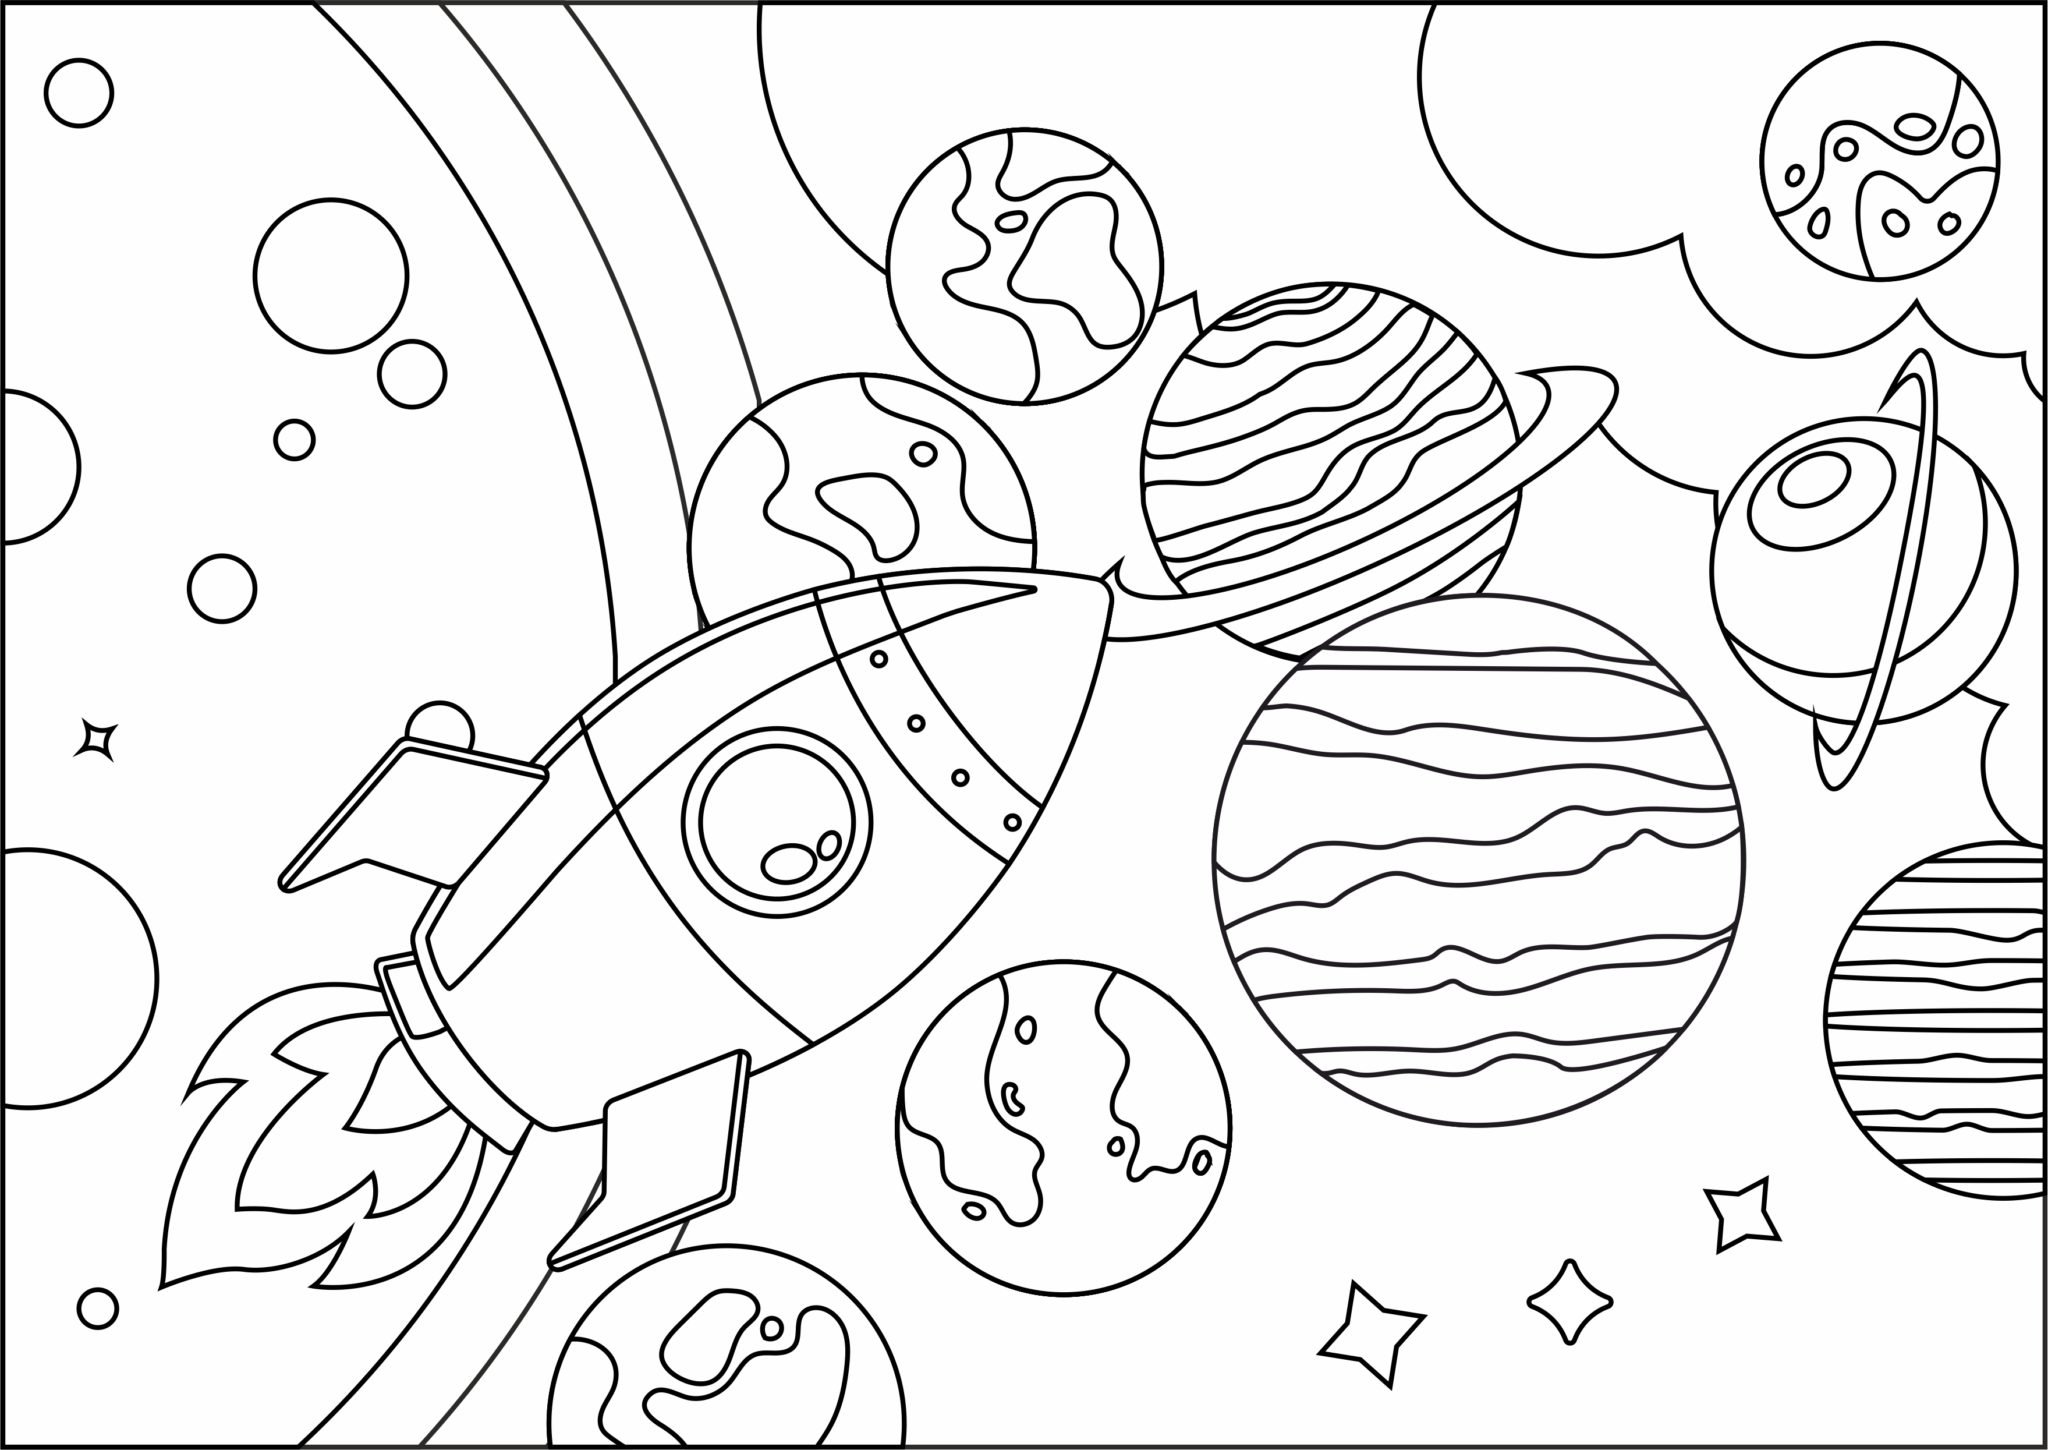 Как раскрасить планеты солнечной системы. Космос раскраска для детей. Раскраска космос и планеты. Солнечная система раскраска. Раскраска космос и планеты для детей.